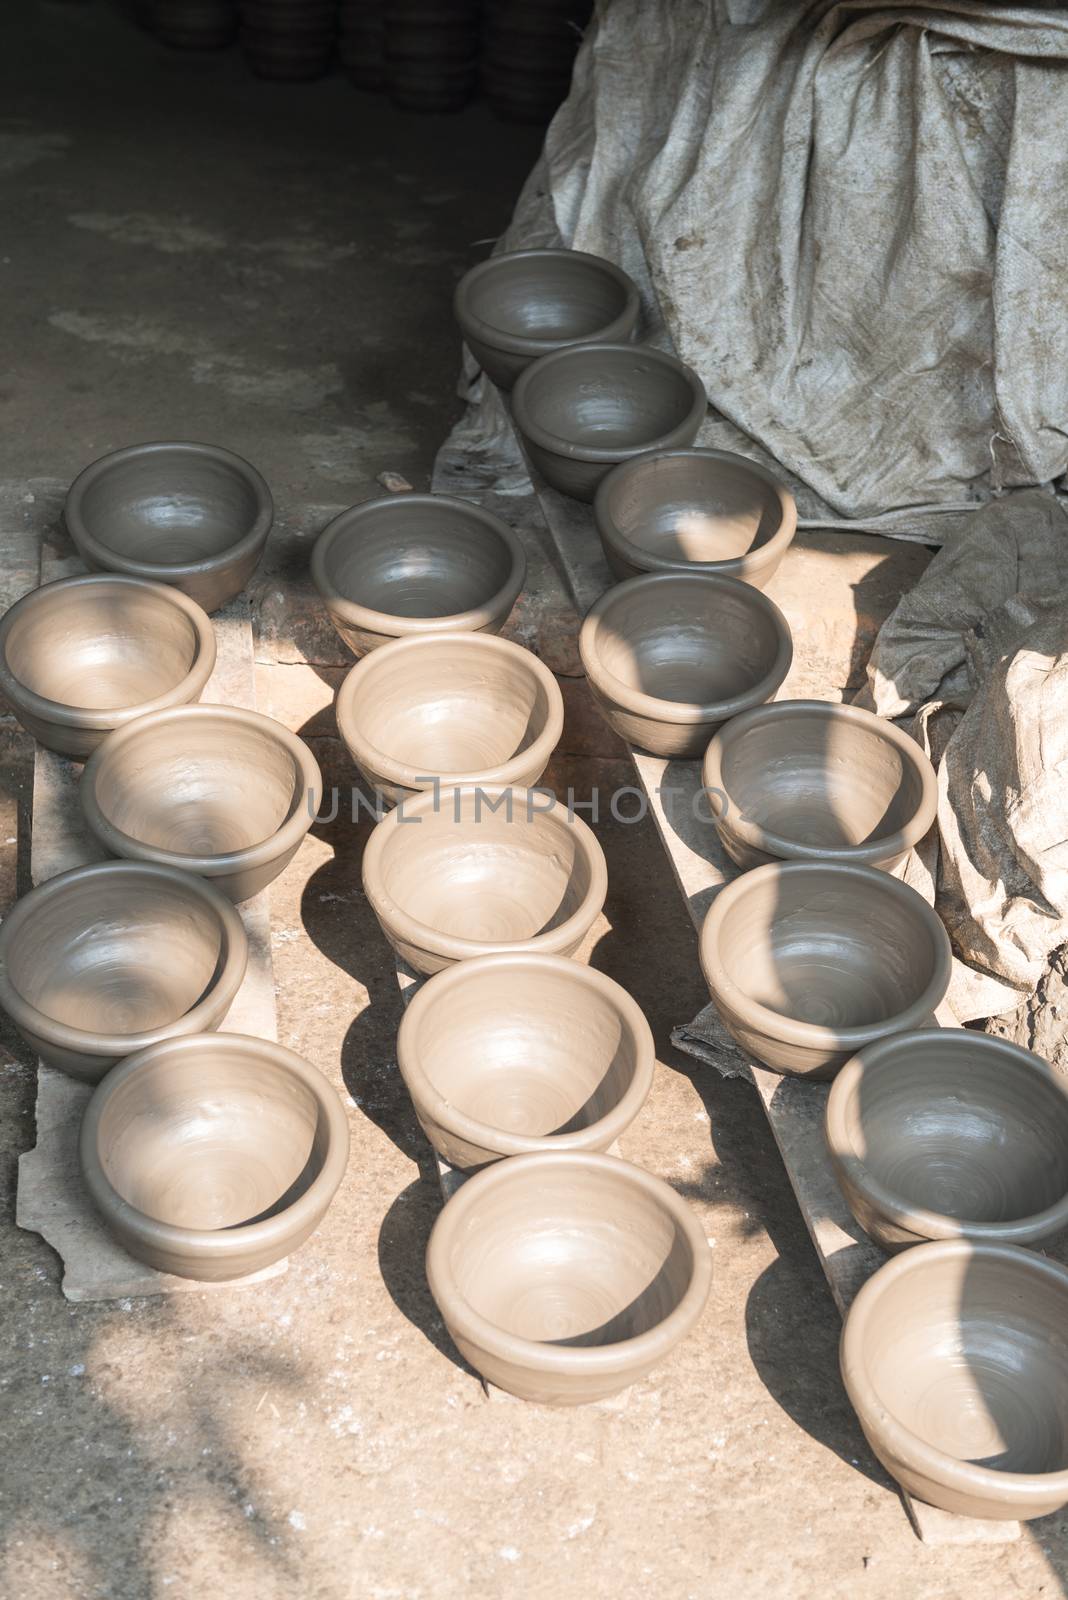 bangladeshi Handmade Pots In pottery village, bangladesh